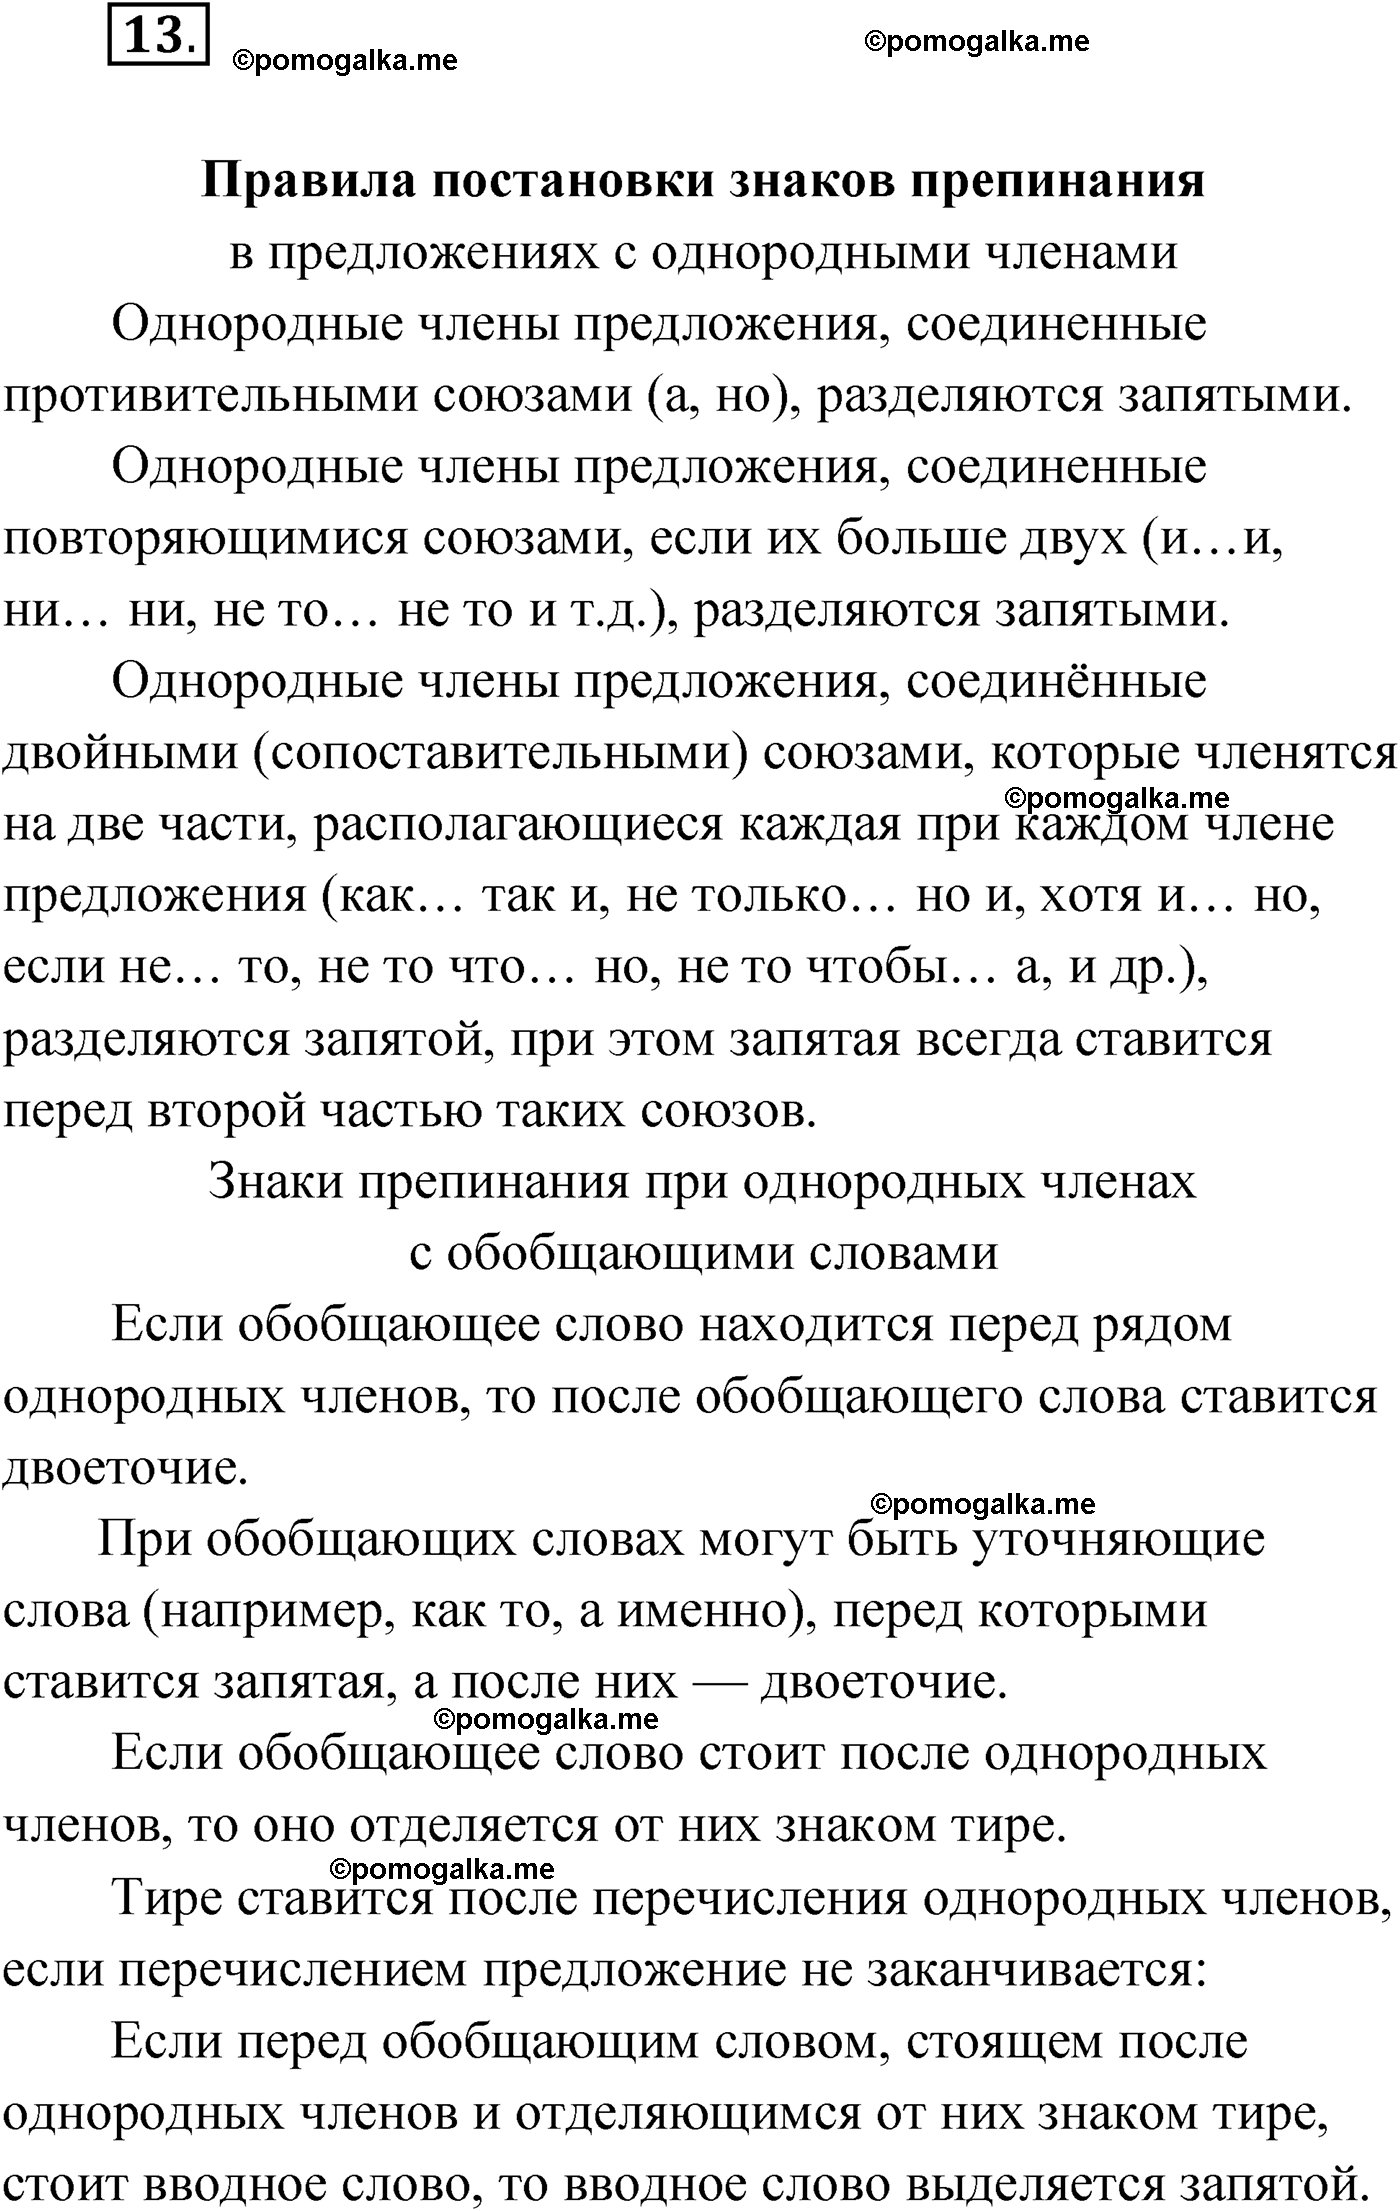 упражнение №13 русский язык 9 класс Мурина 2019 год